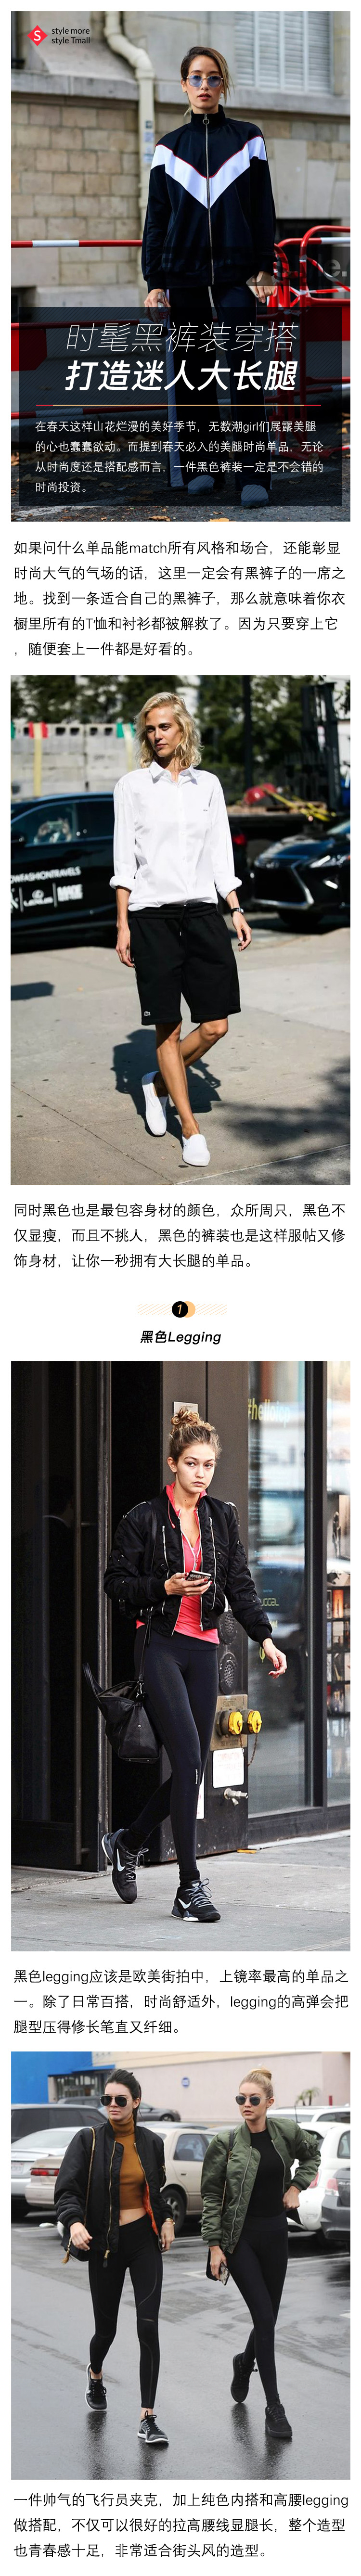 爱打扮(www.idaban.cn)，时髦黑裤装穿搭，打造迷人大长腿1